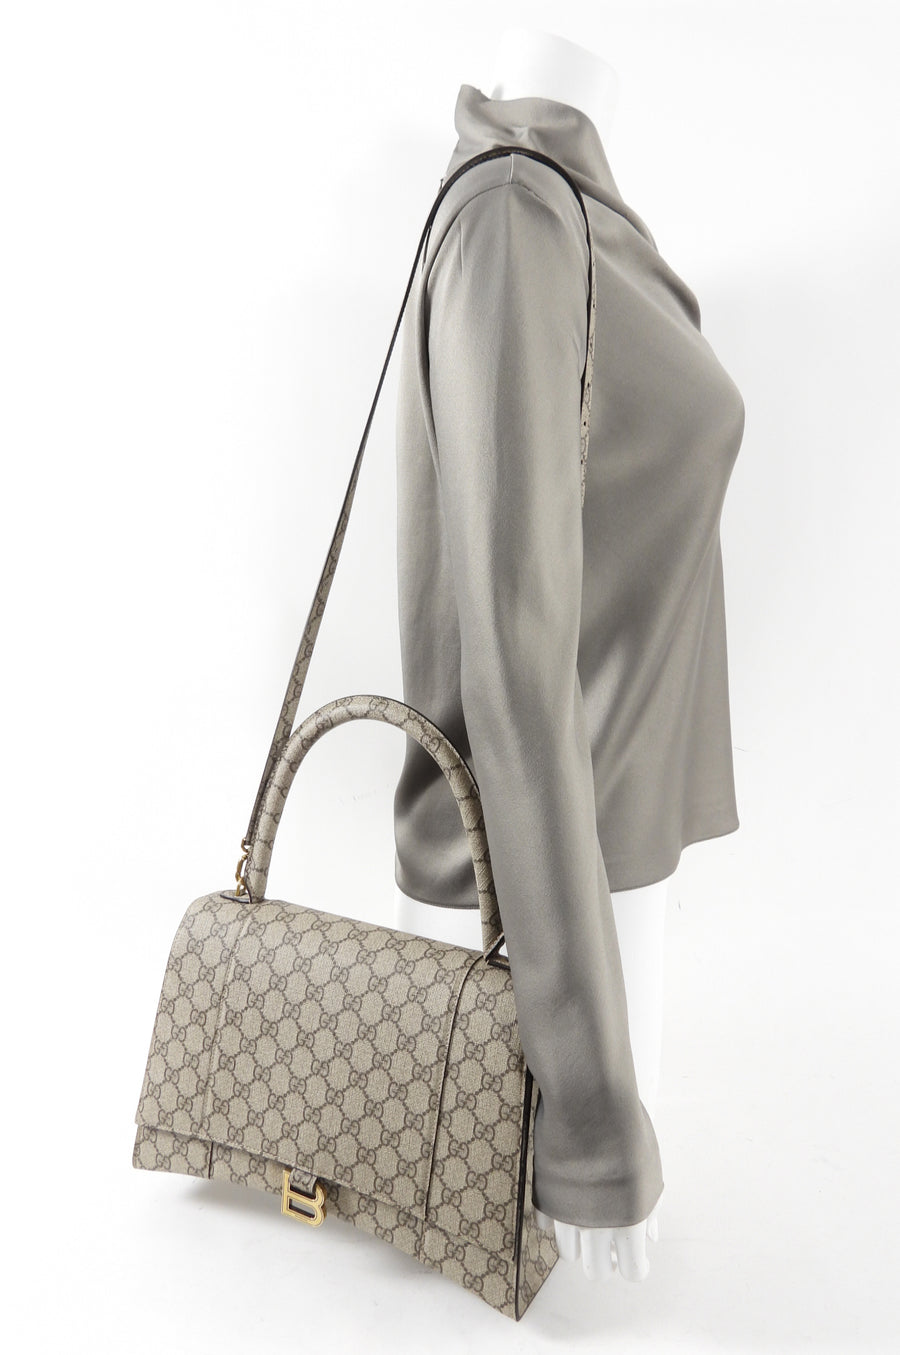 GUCCI 2021-22FW Gucci Balenciaga The Hacker Project Medium Hourglass Bag